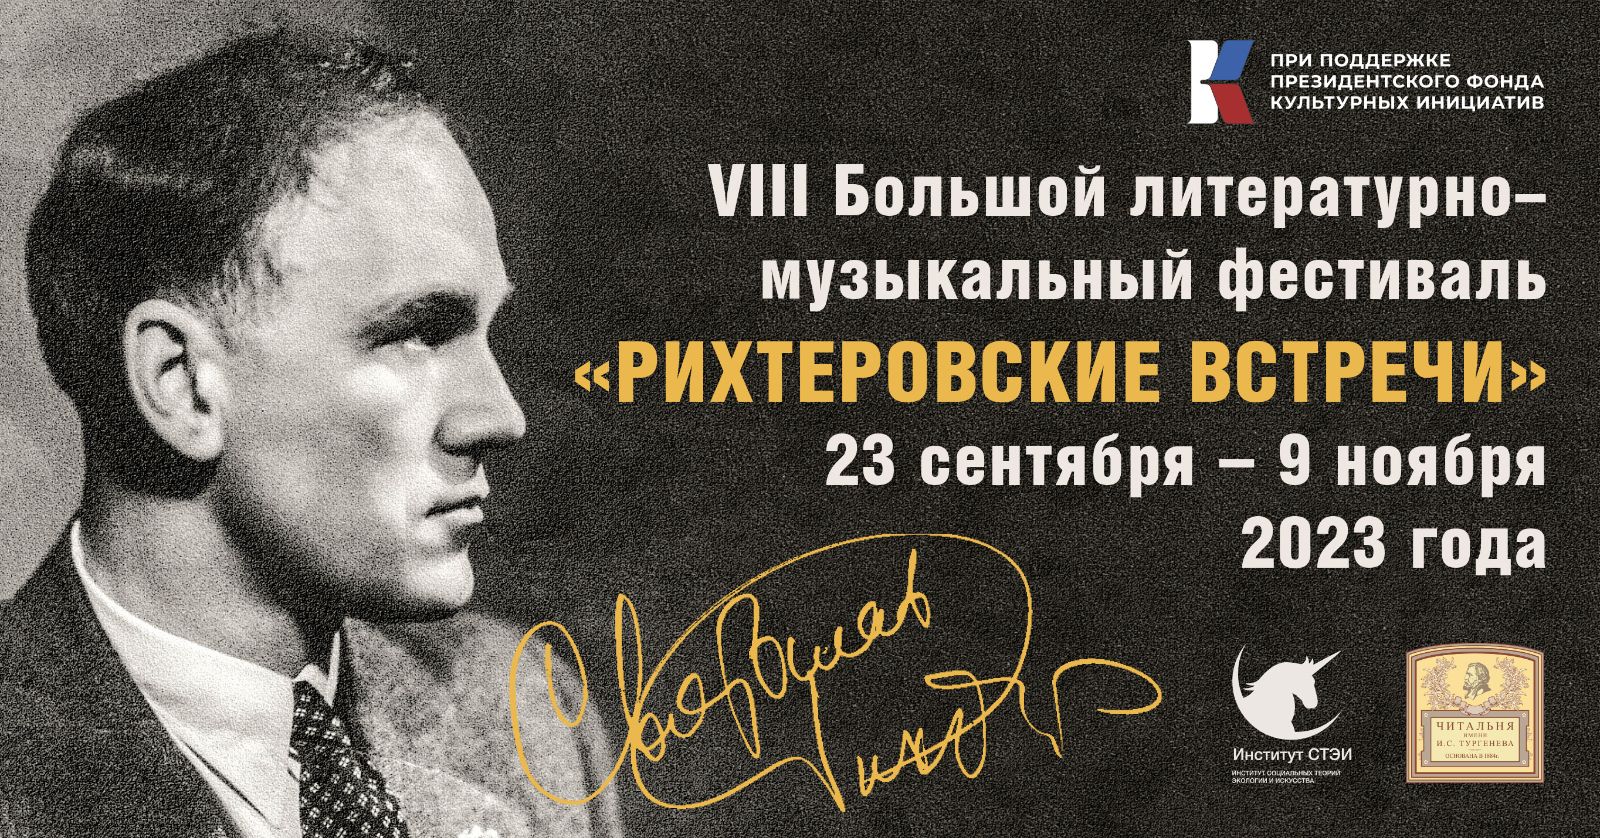 C 23 сентября по 9 ноября в Москве при поддержке ПФКИ пройдет VIII Большой литературно-музыкальный фестиваль «Рихтеровские встречи»